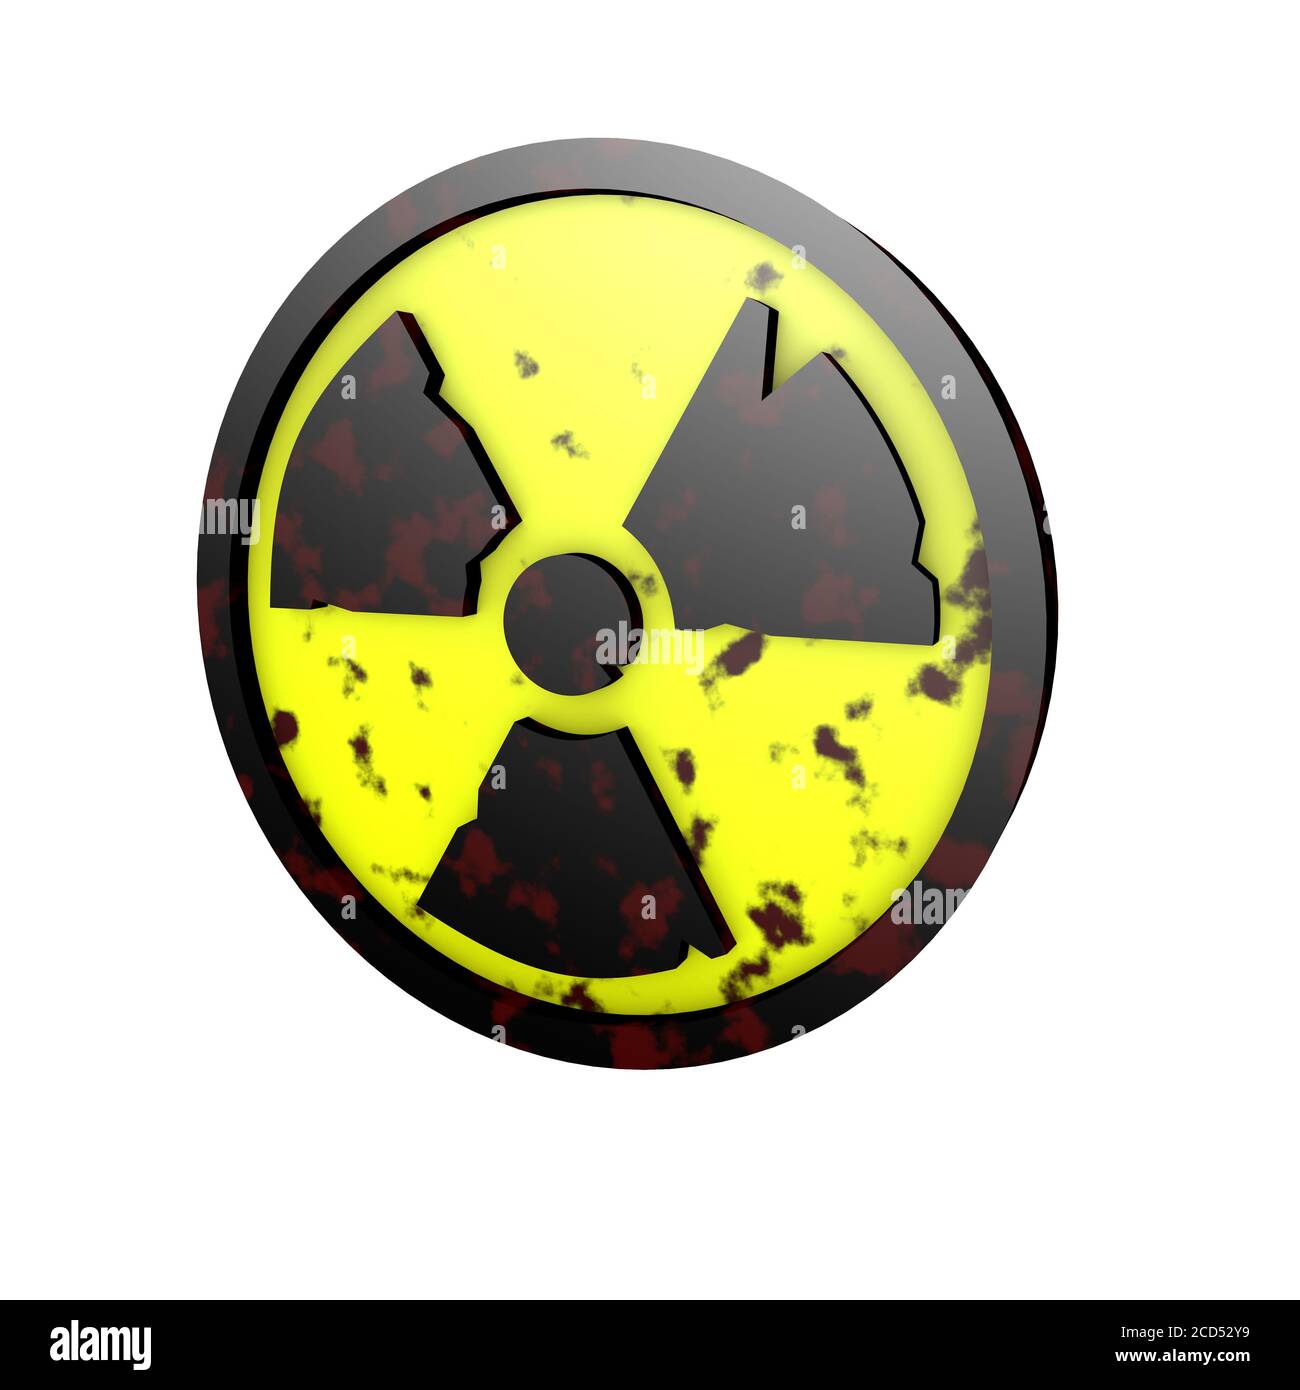 illustrazione 3d radiazione radioattiva radioattività simbolo del logo nucleare atomico arrugginito rendering sporco ruvido Foto Stock